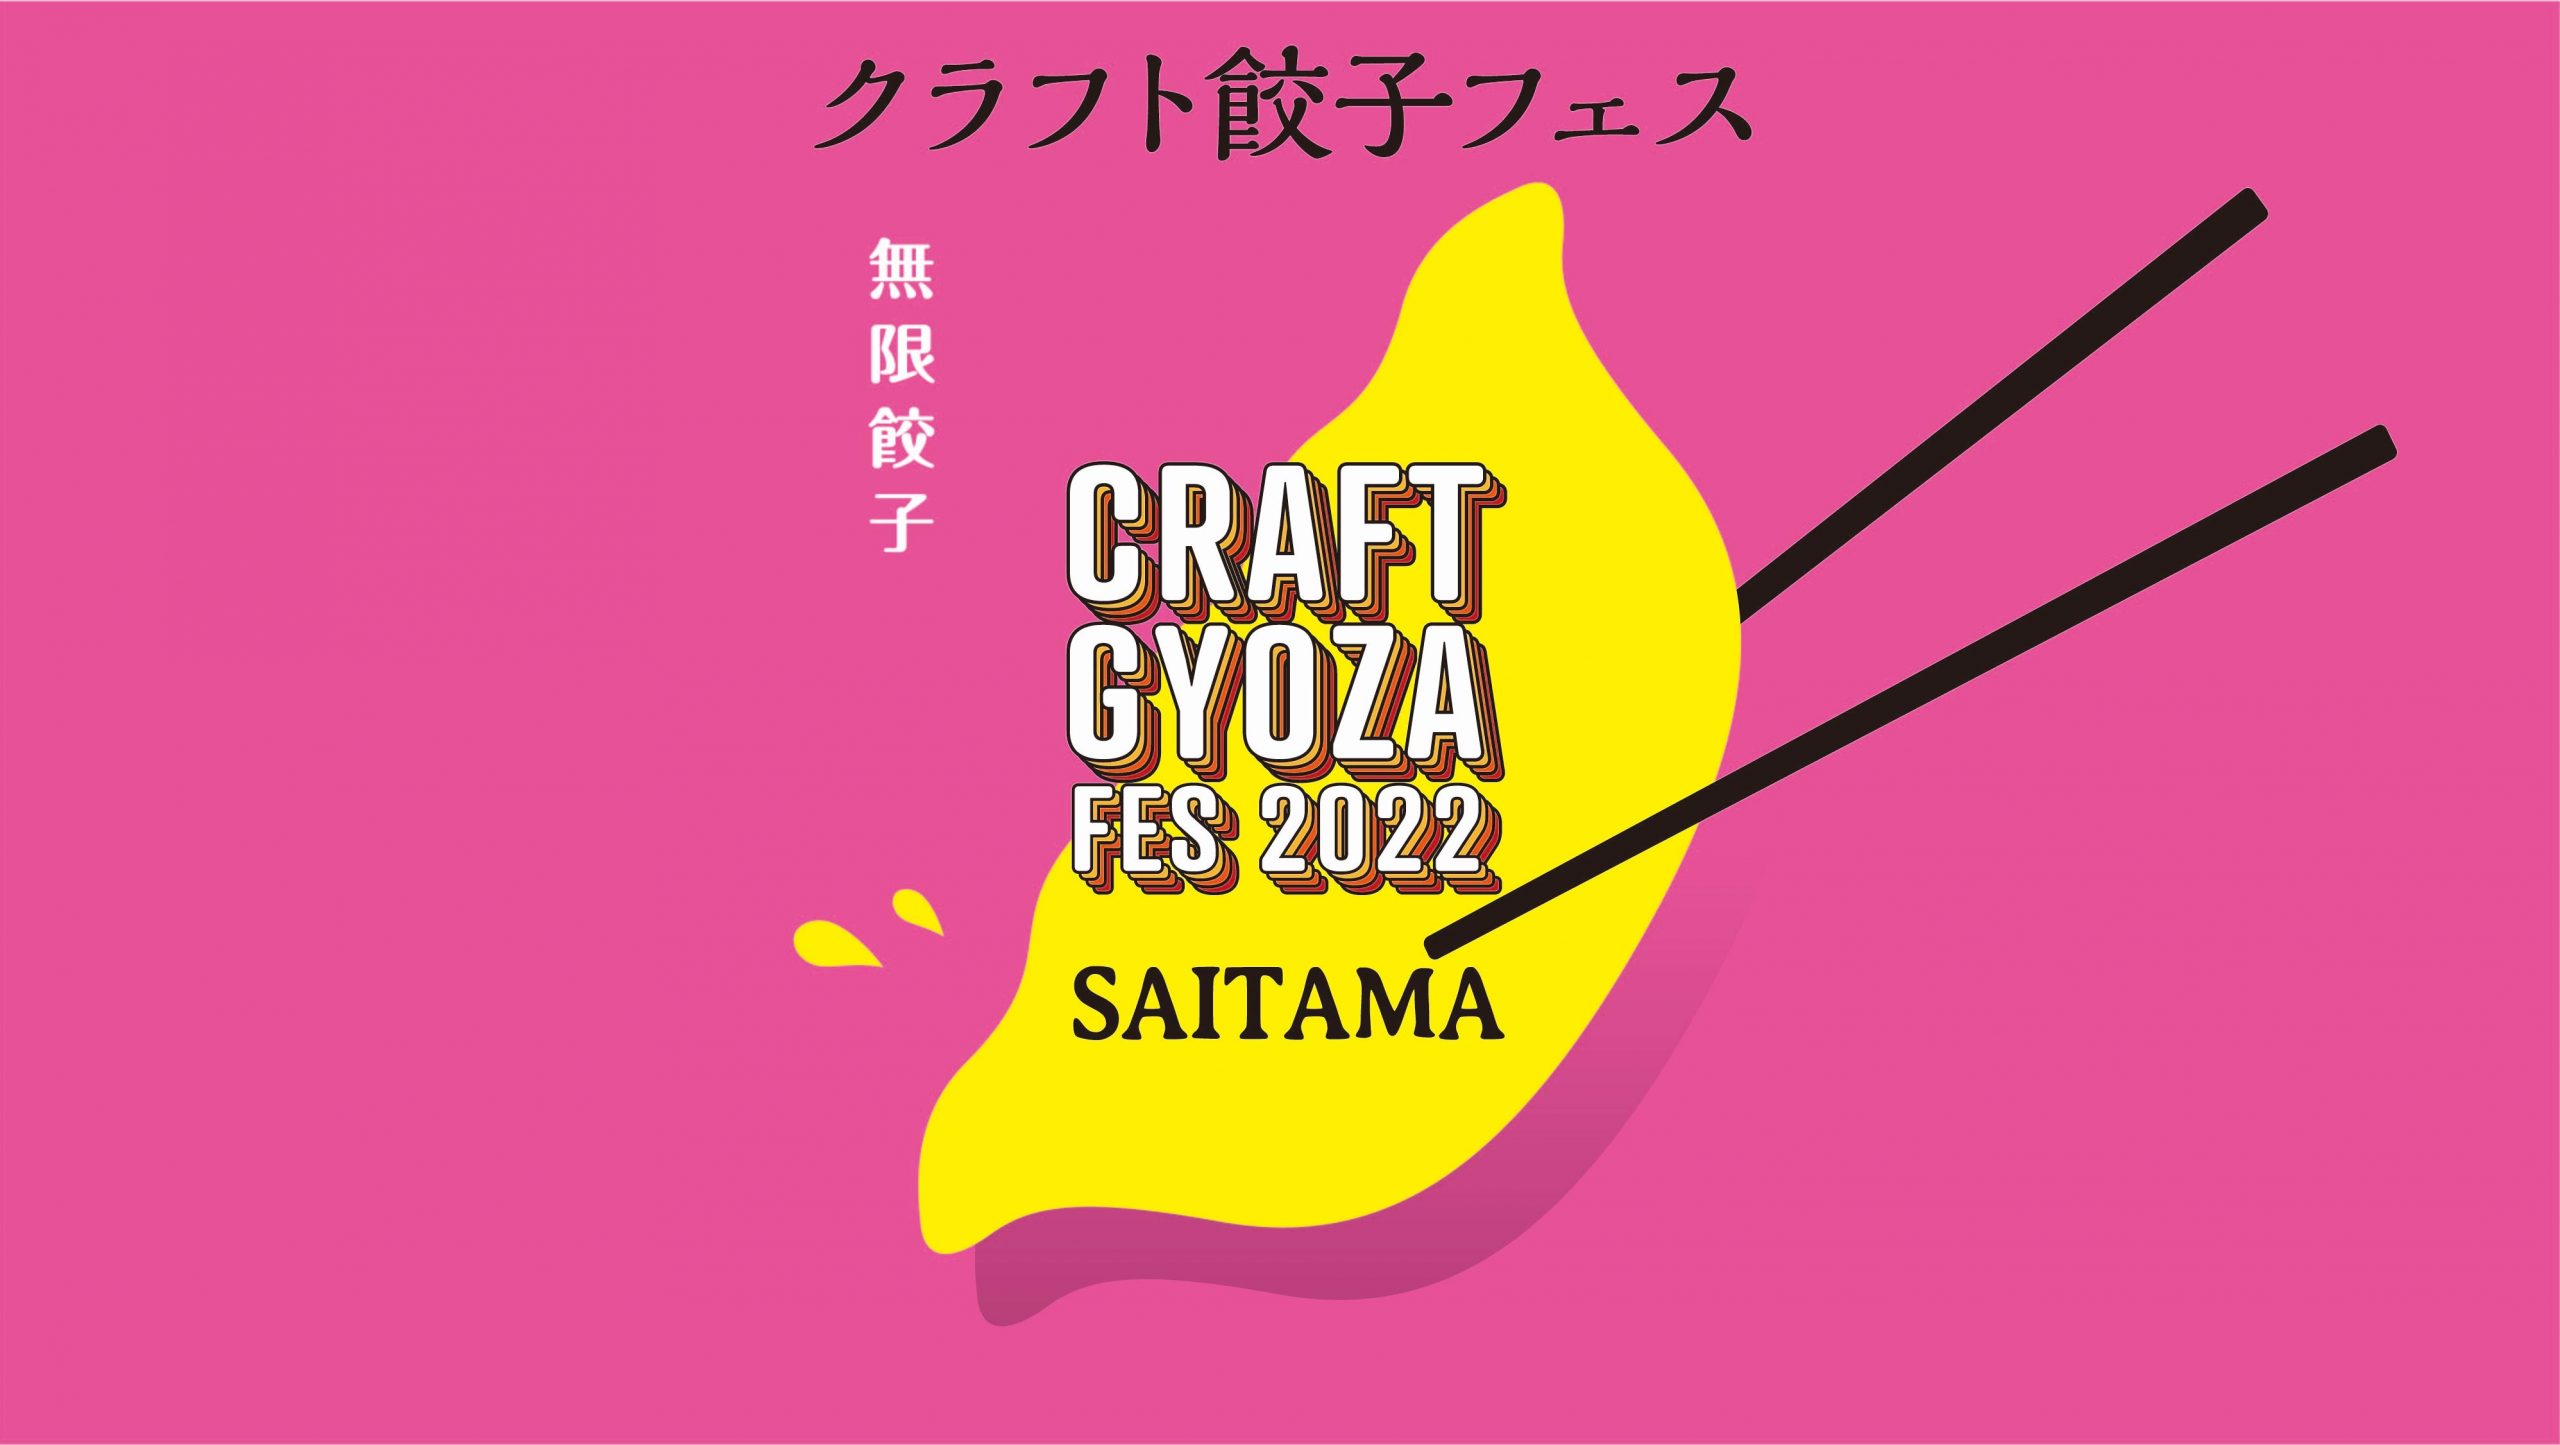 クラフト餃子フェス 2022 SAITAMA